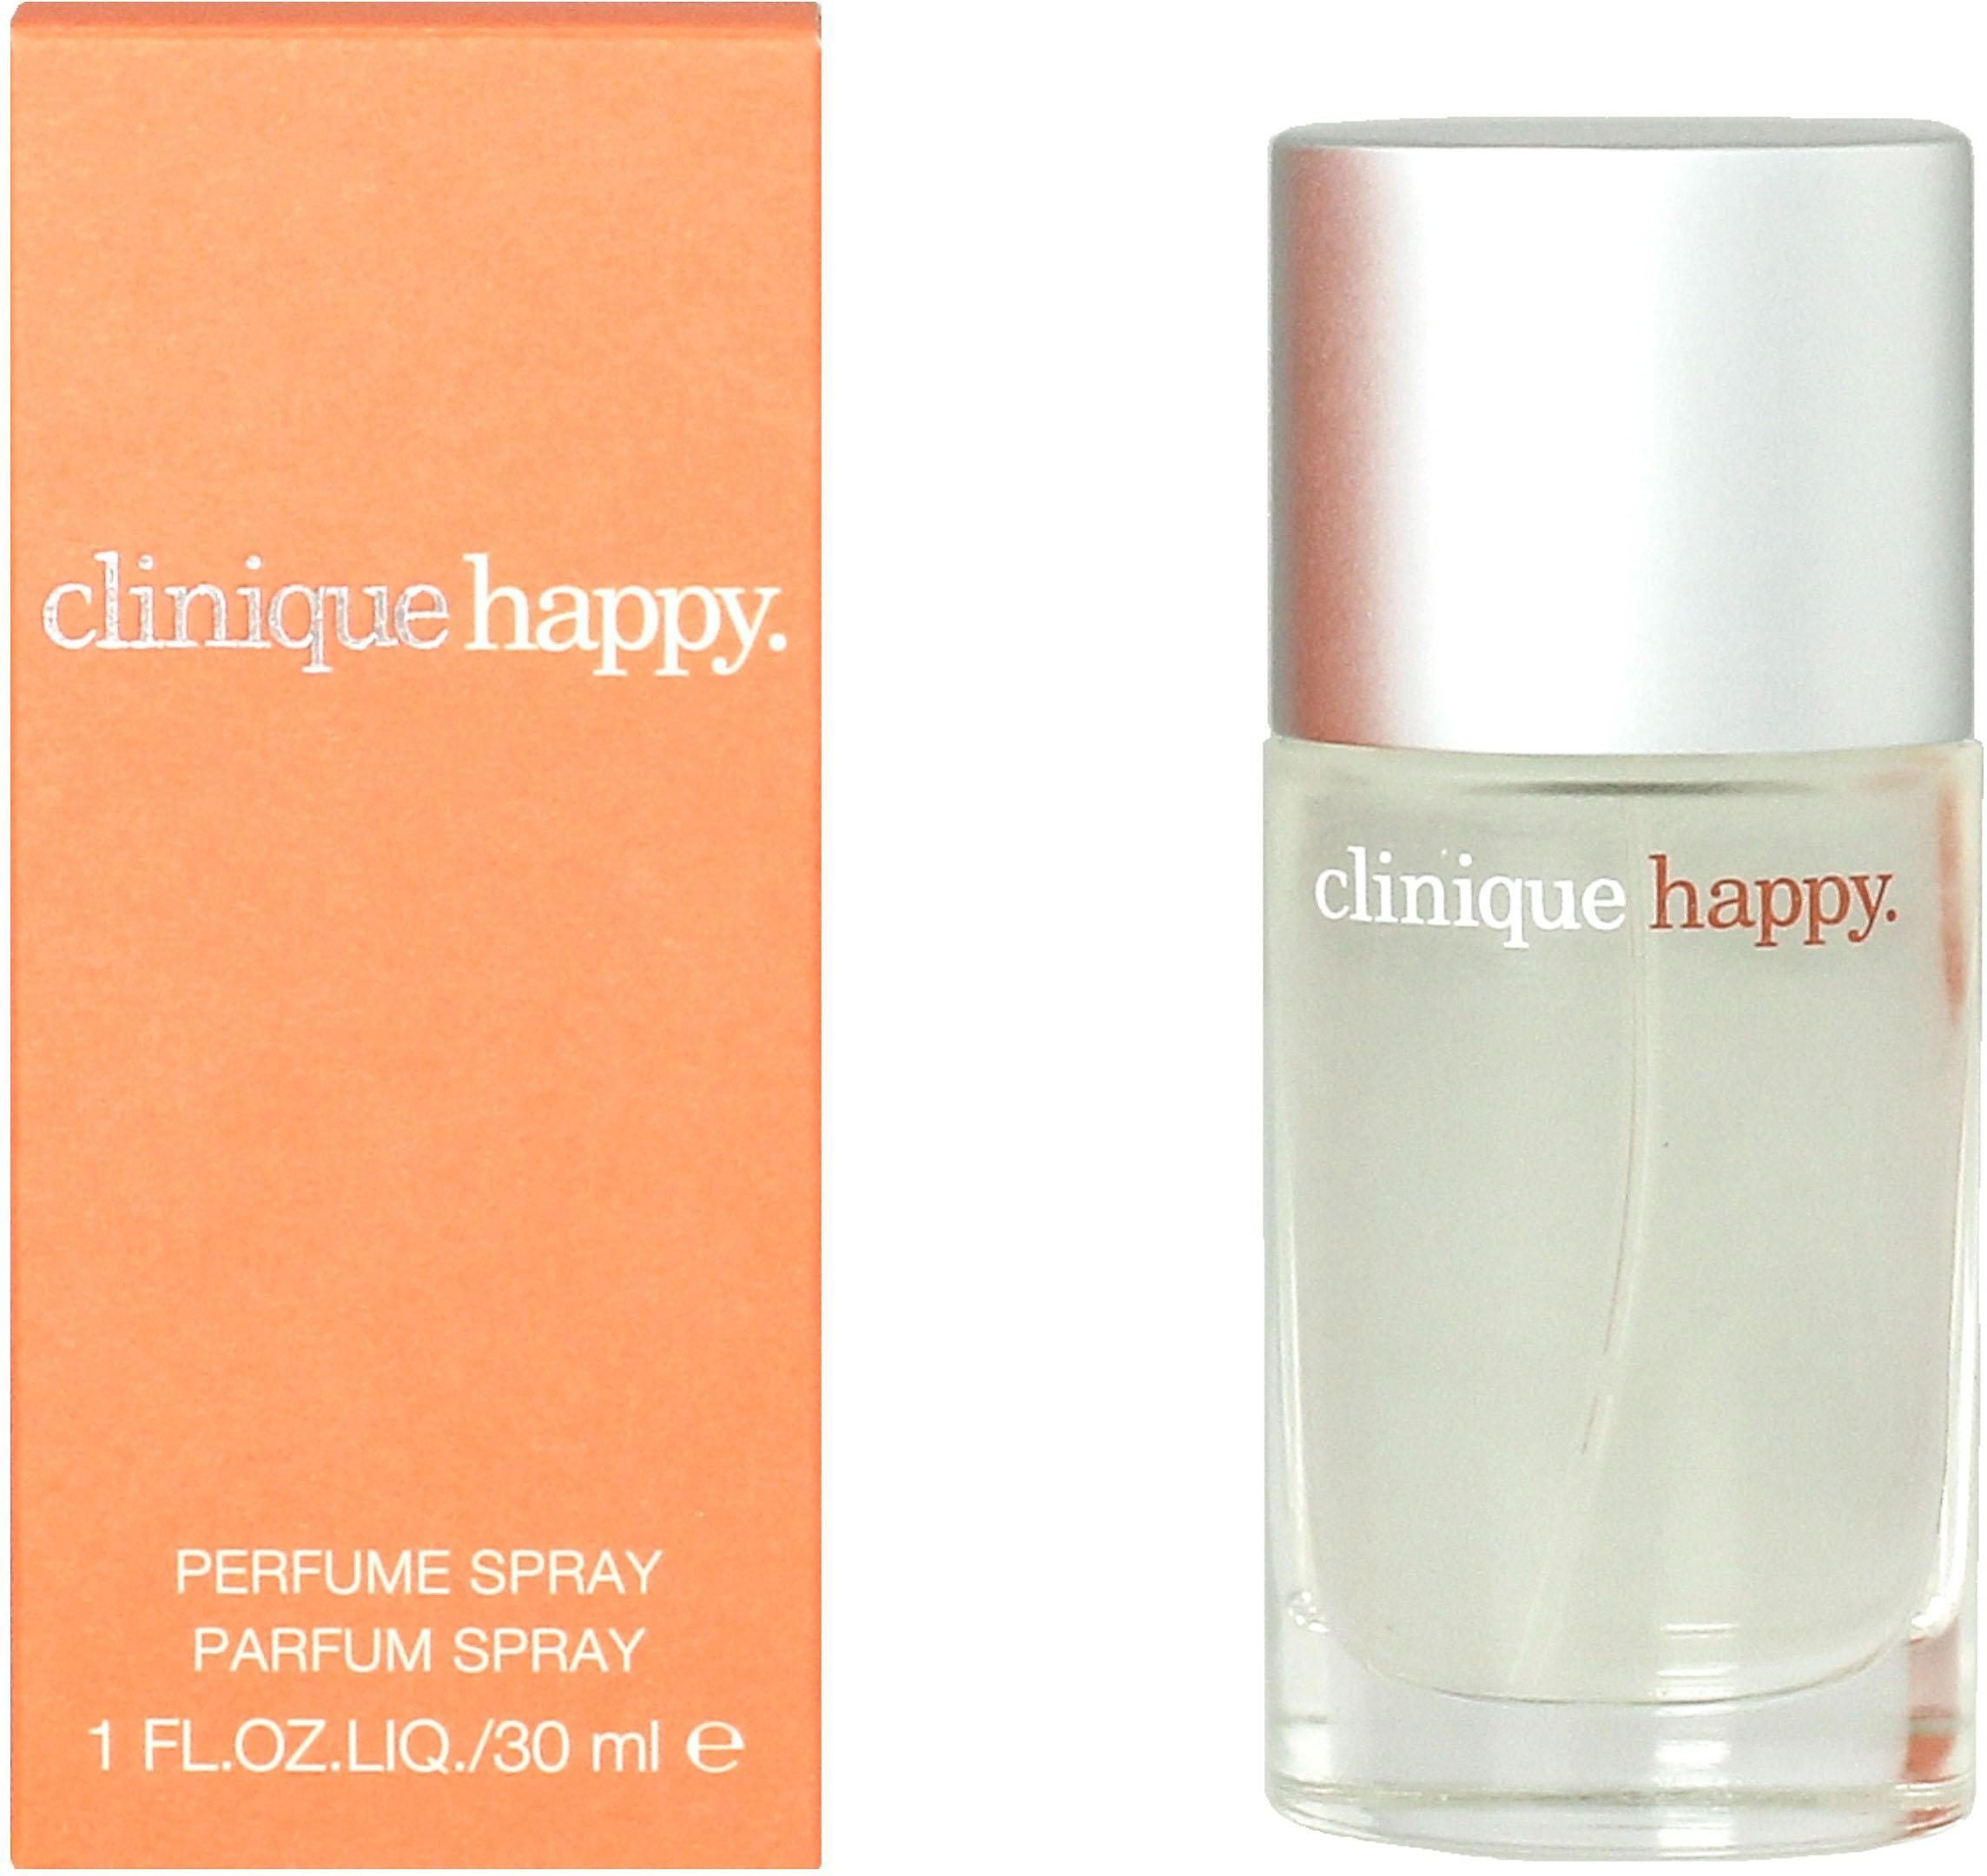 CLINIQUE Eau Parfum de Happy